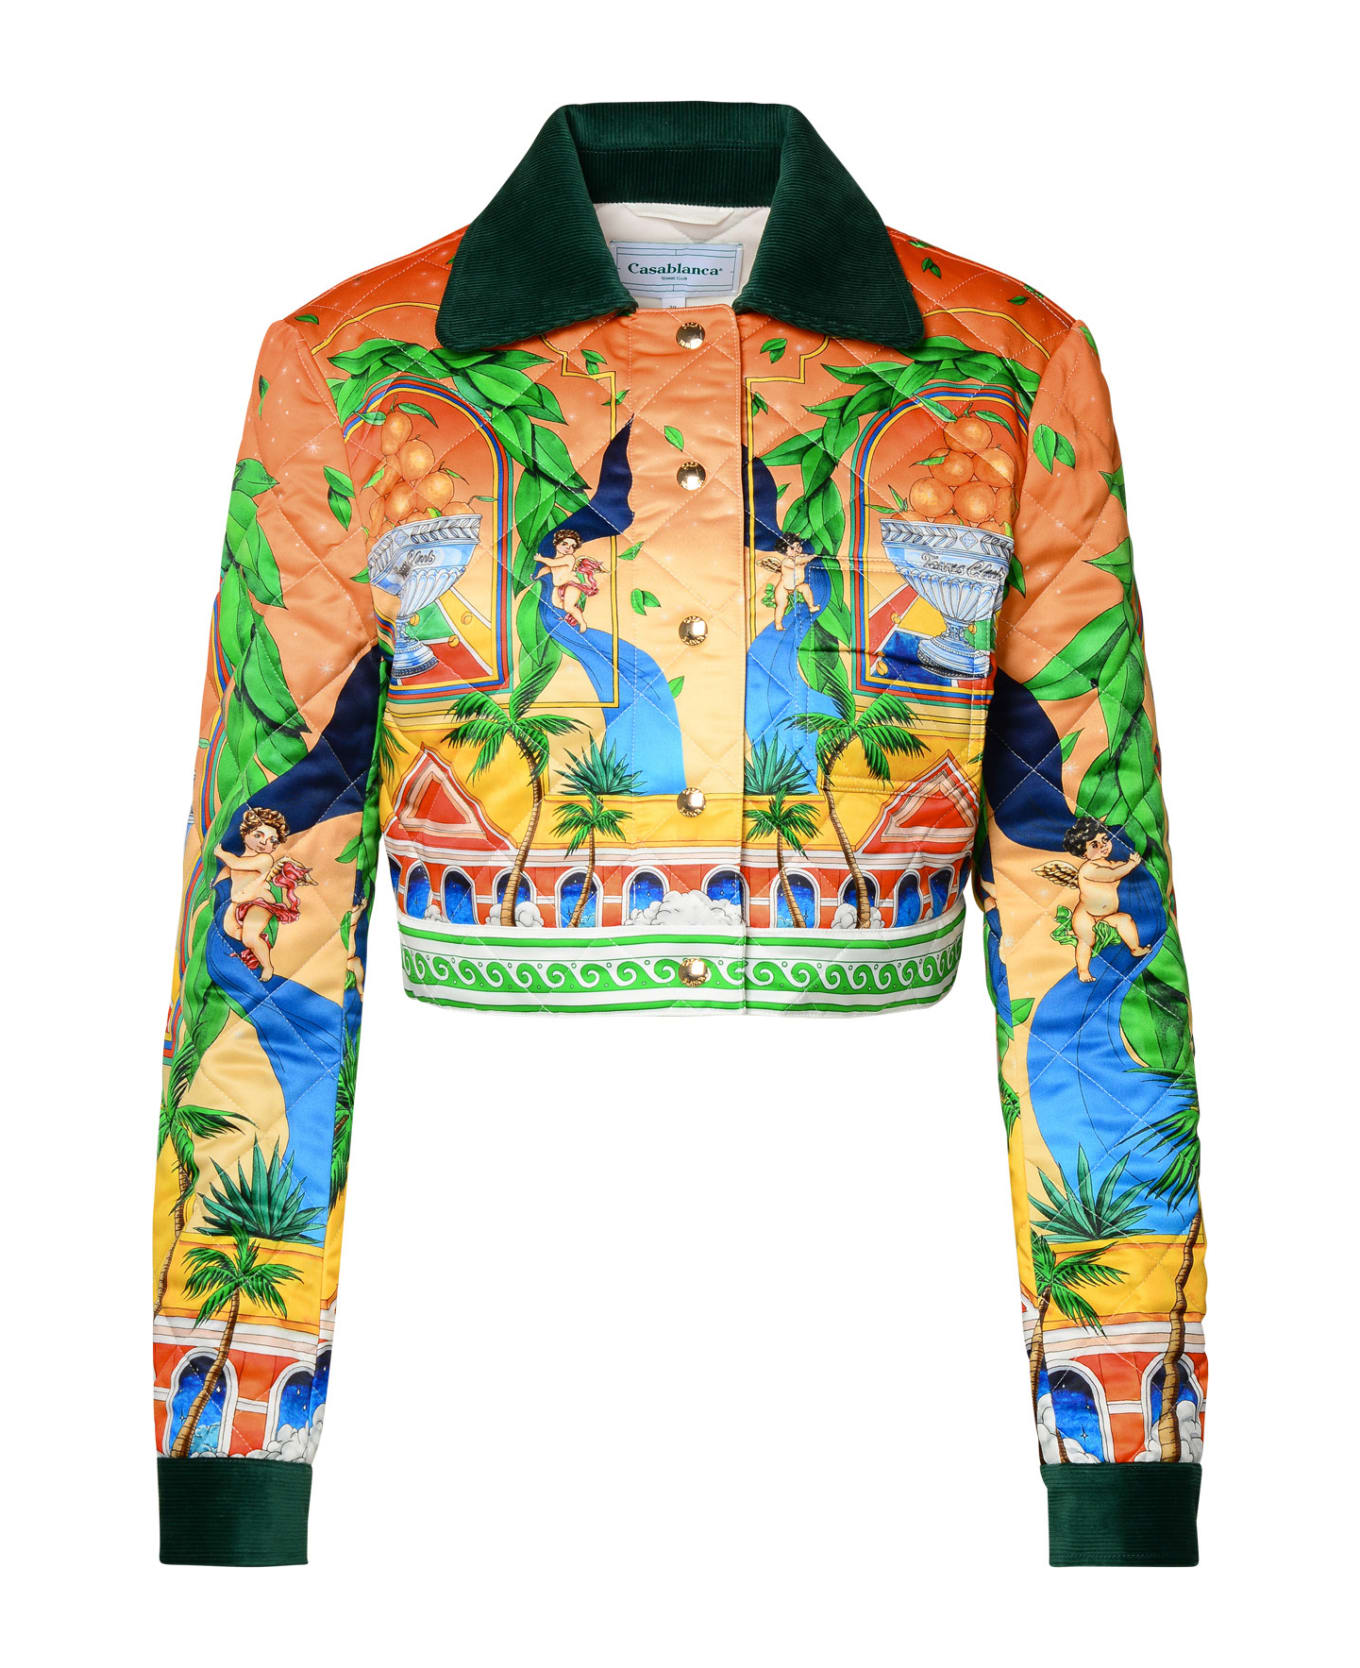 Casablanca Multicolor Polyester Jacket - ORANGE/GREEN